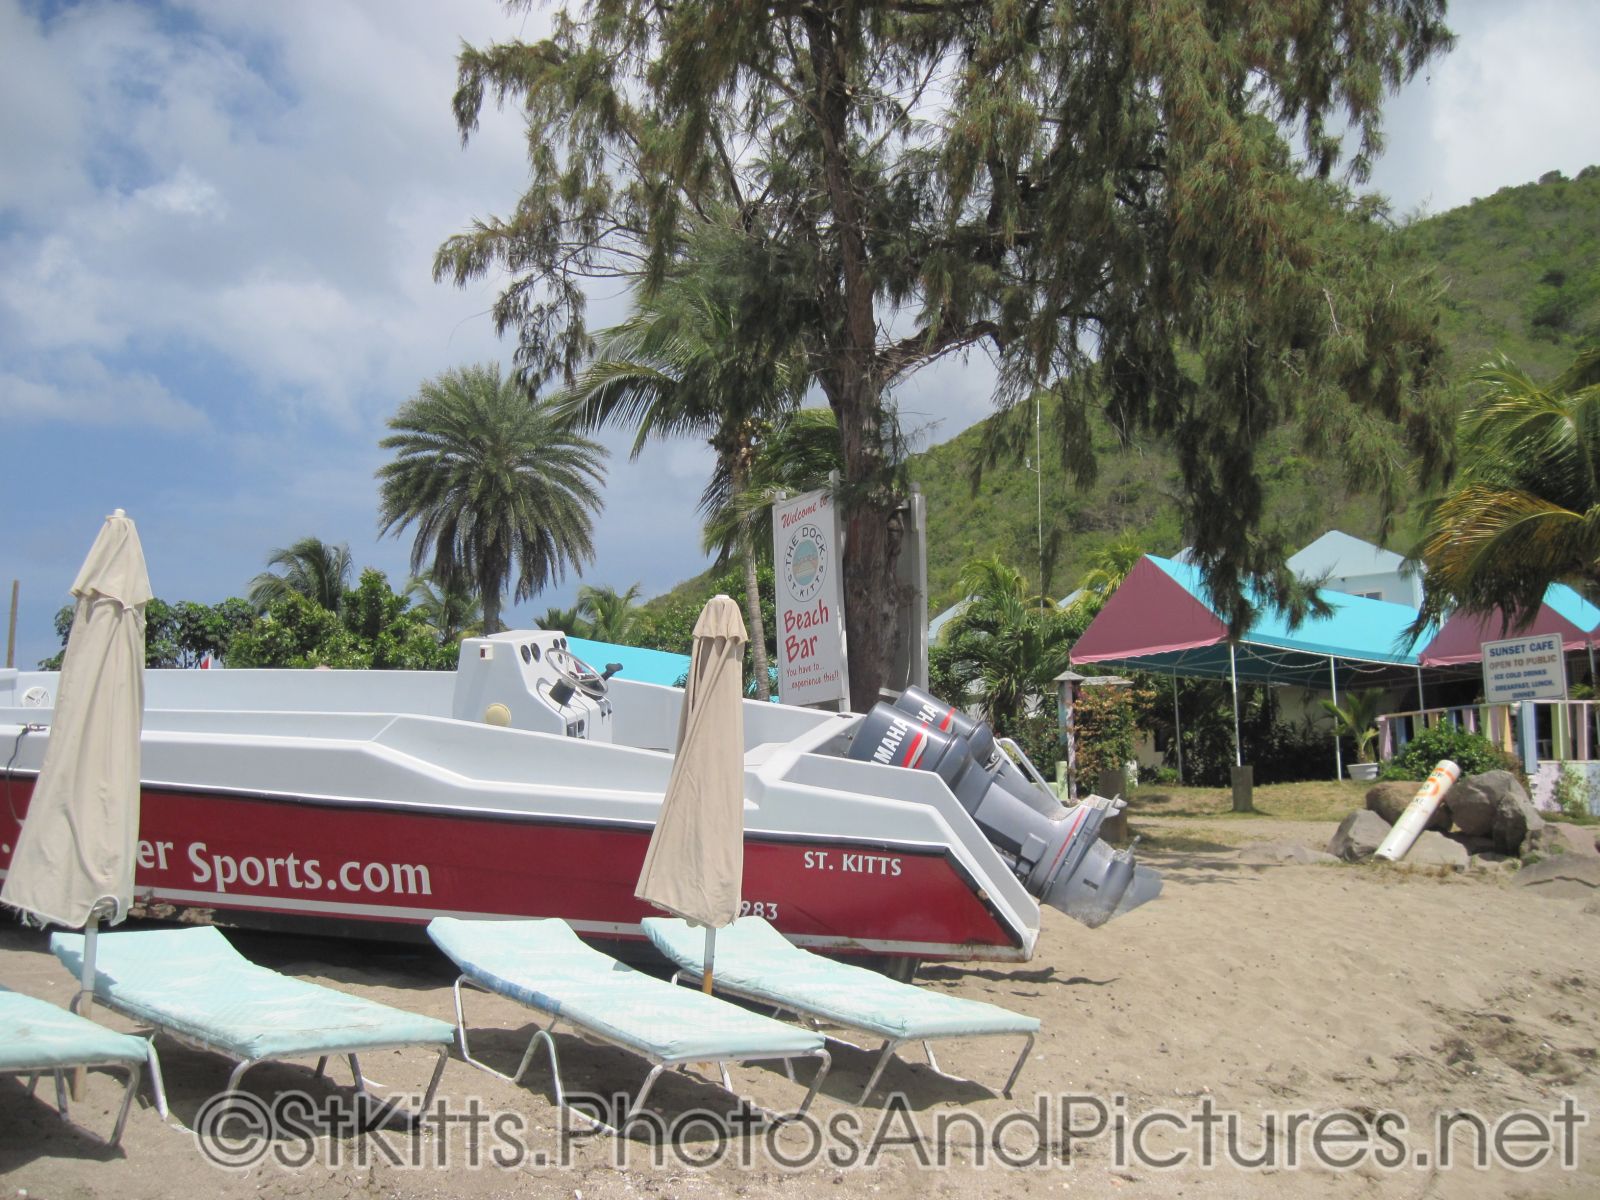 Motor boat parked on beach of Monkey Bar Beach in St Kitts.jpg
